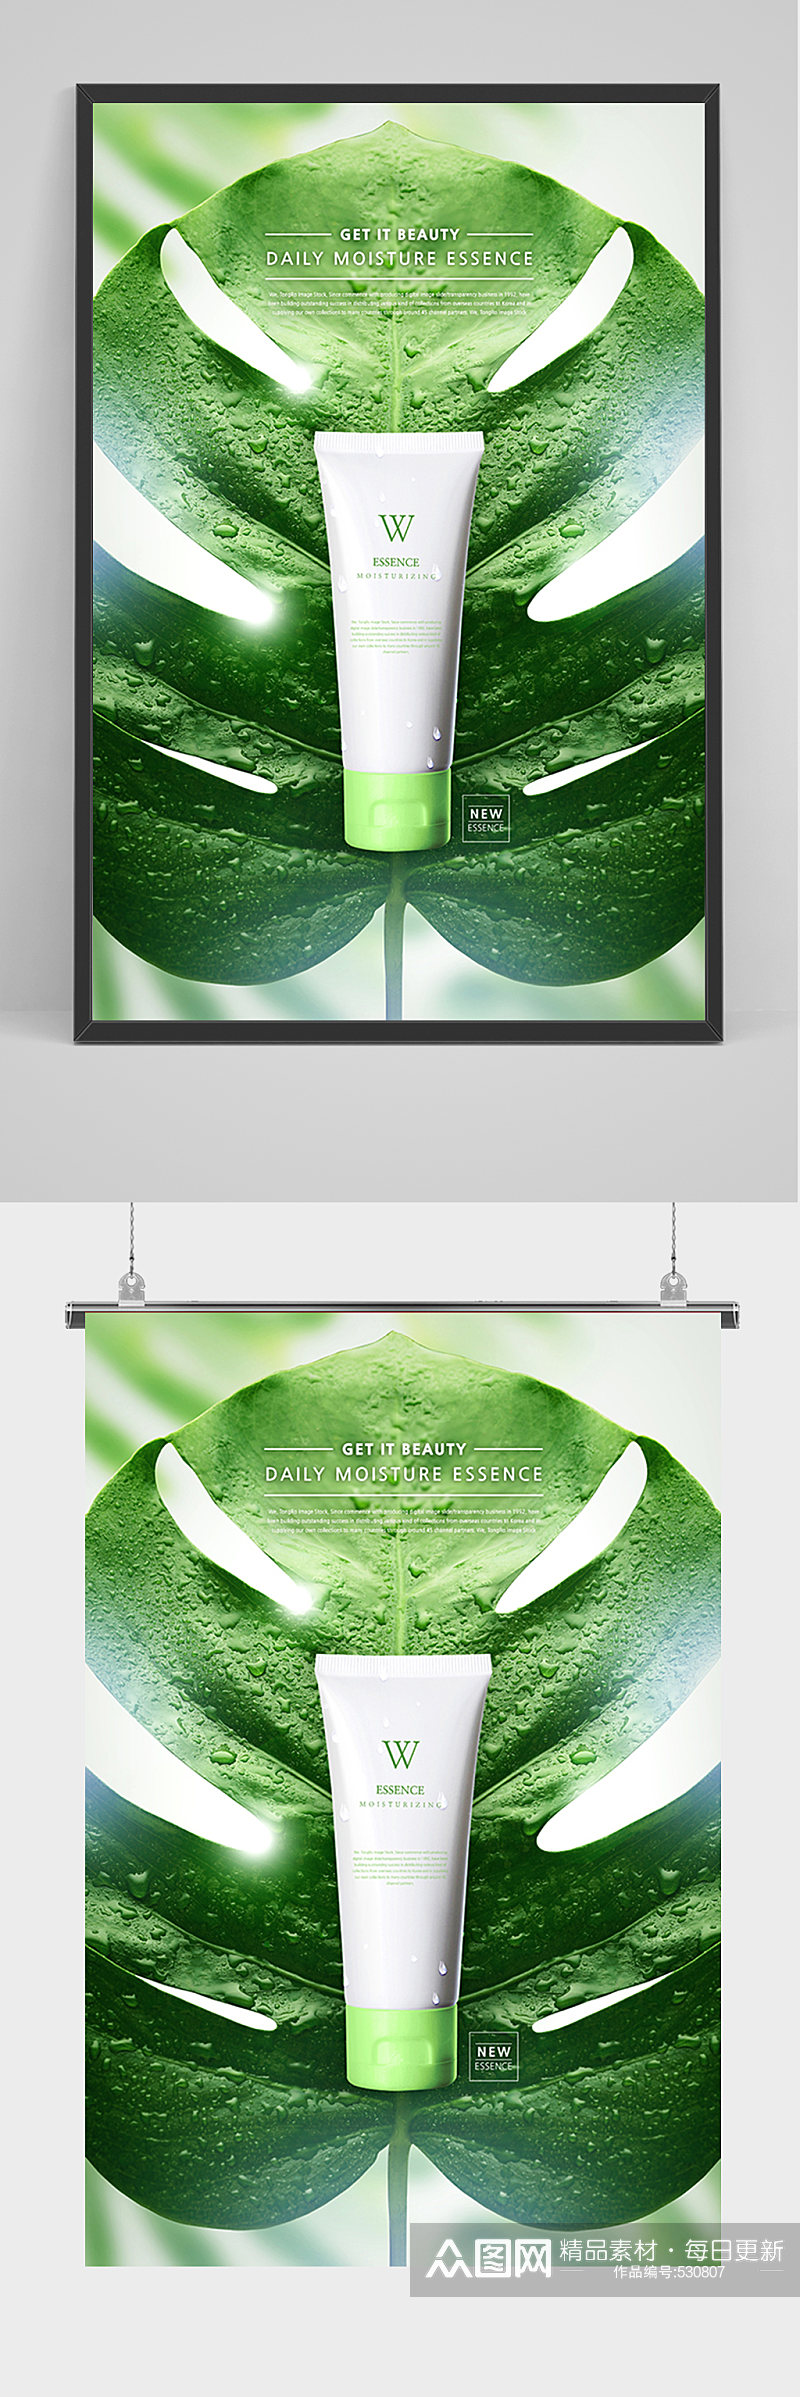 绿色植物背景美妆广告设计海报素材